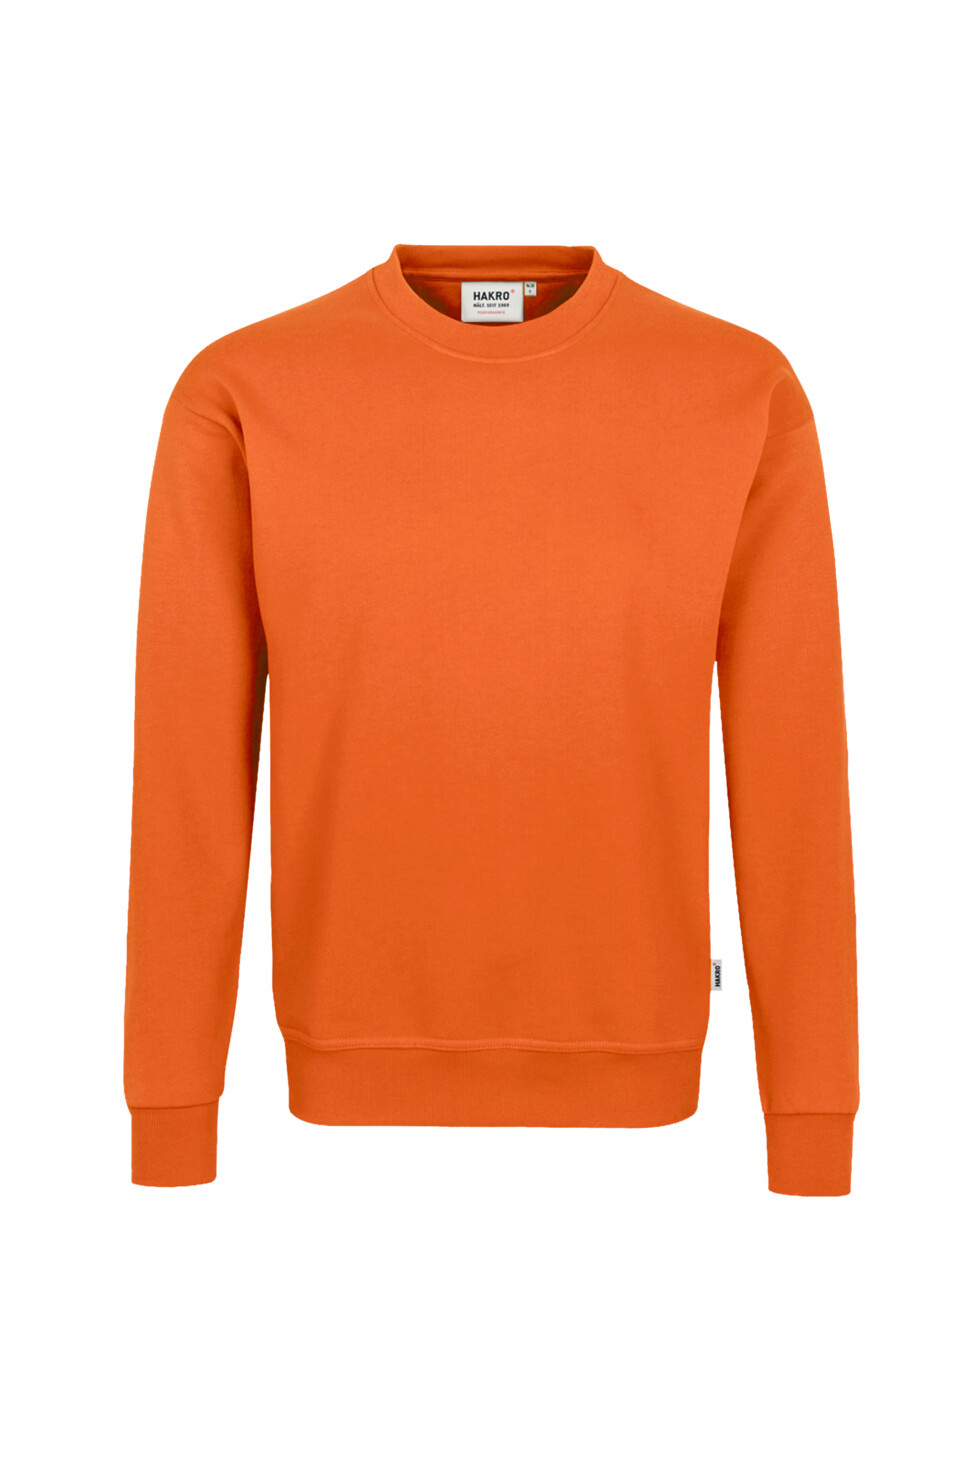 Hakro Herren Sweatshirt Performance, Orange